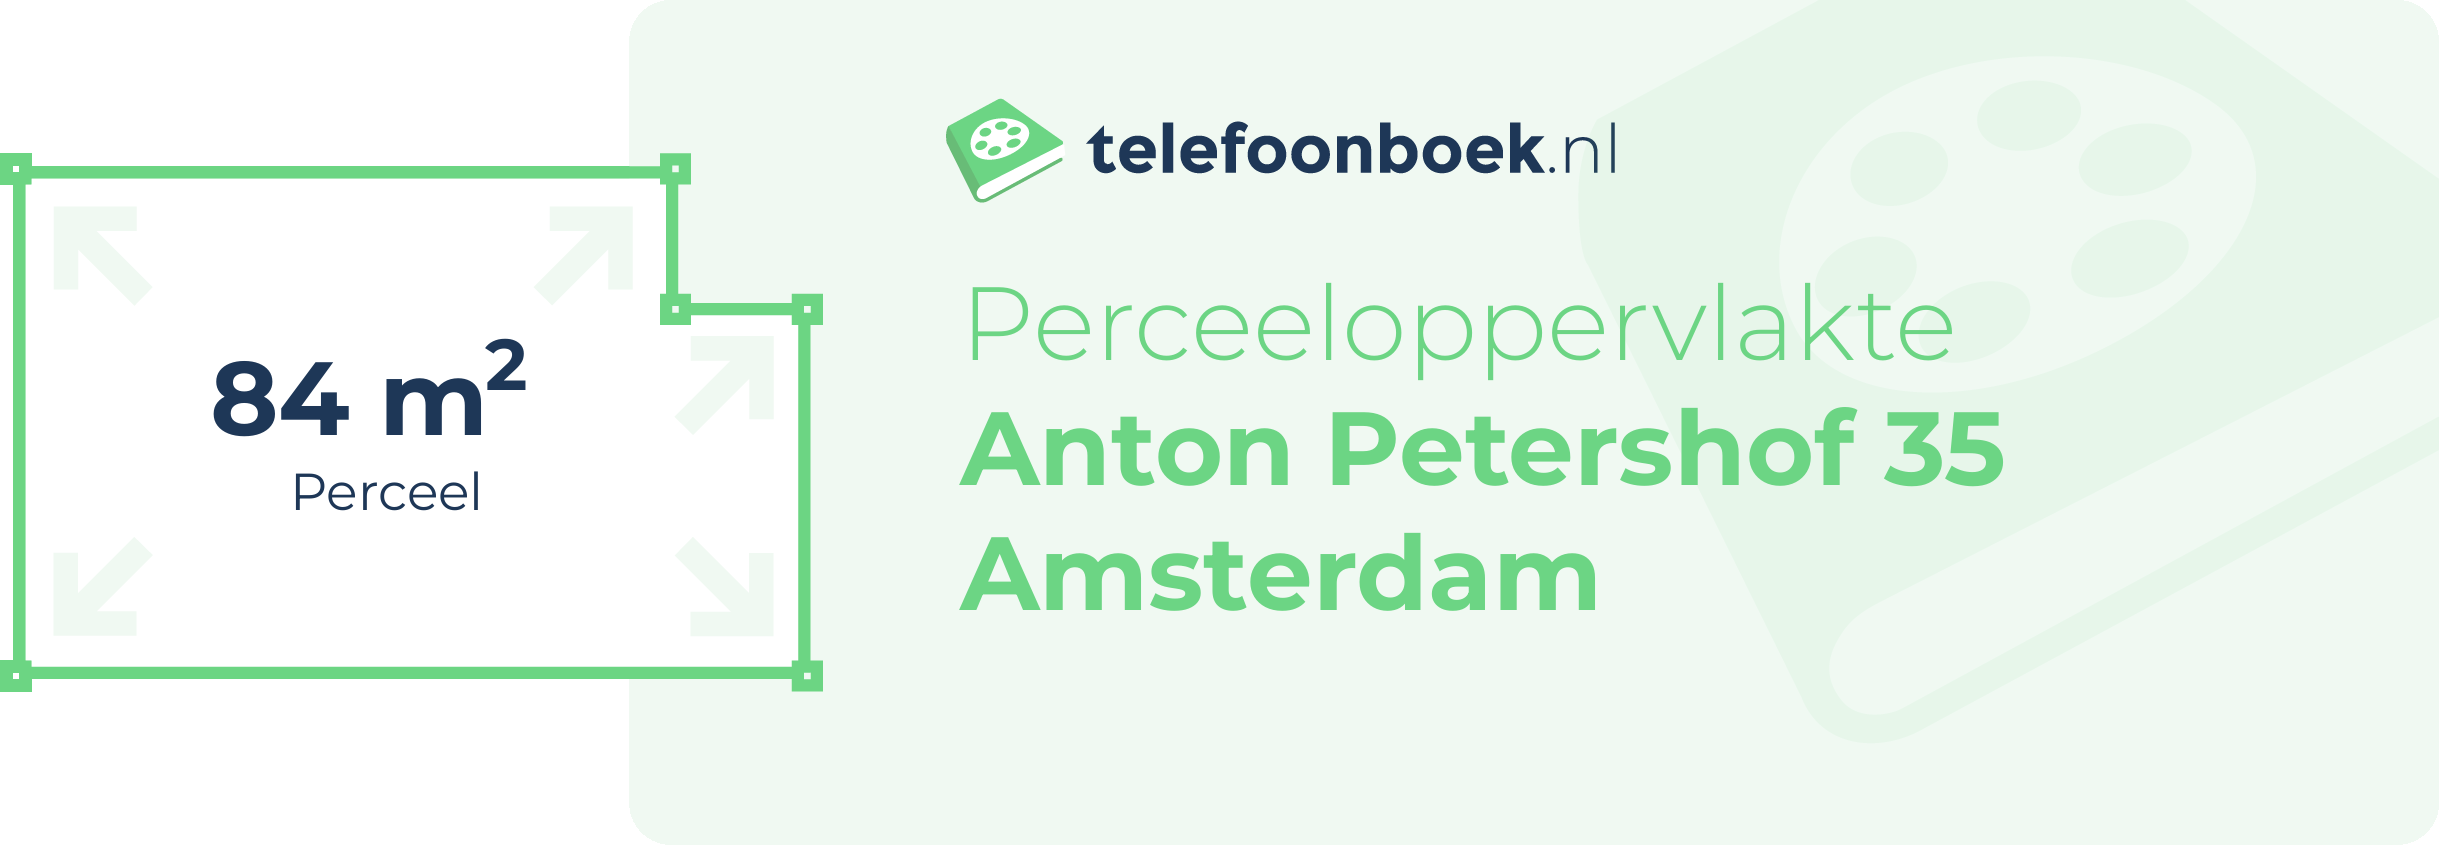 Perceeloppervlakte Anton Petershof 35 Amsterdam